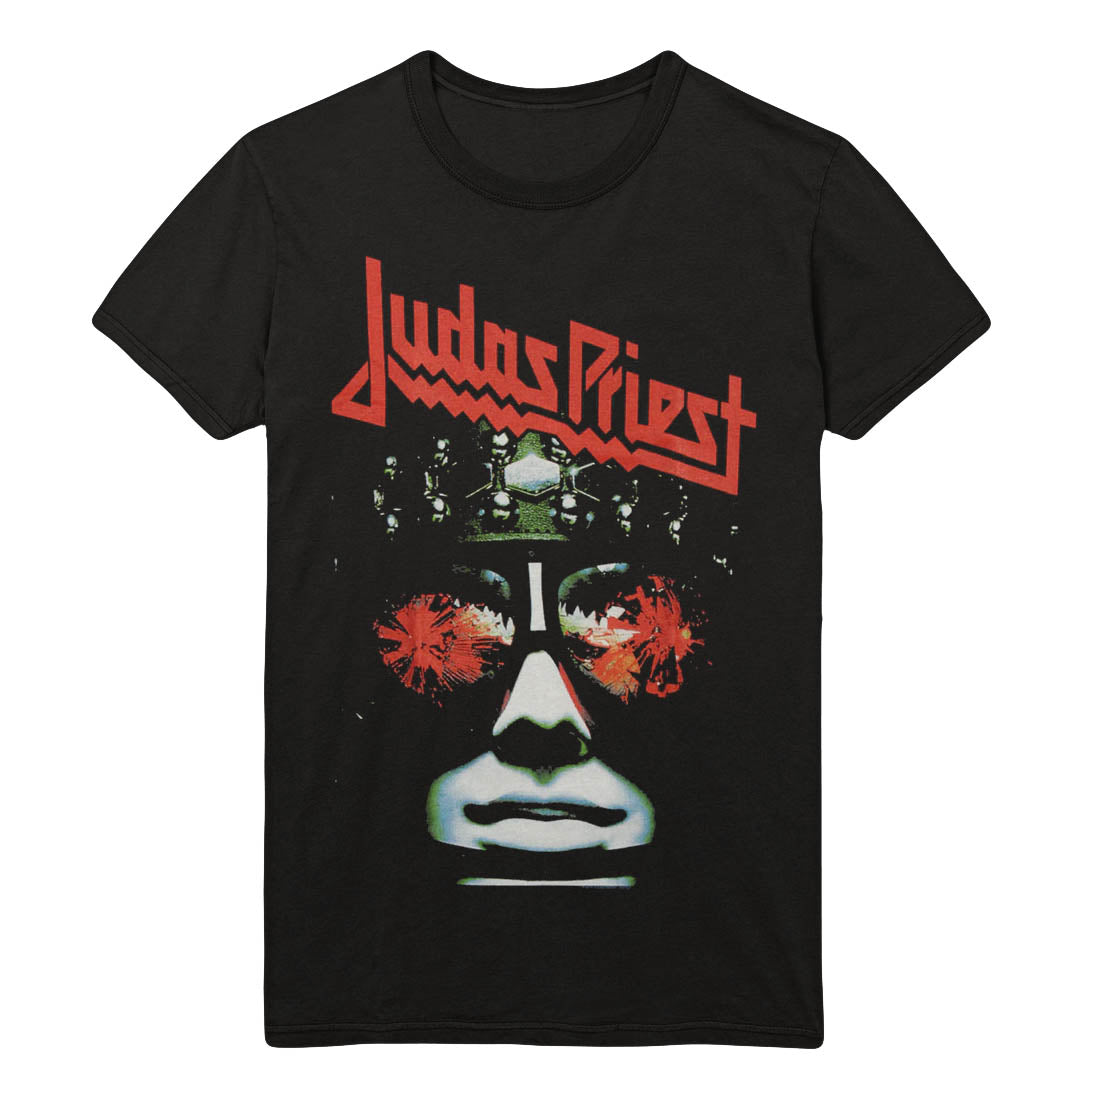 Judas Priest Hellbent T-Shirt - GIG-MERCH.com